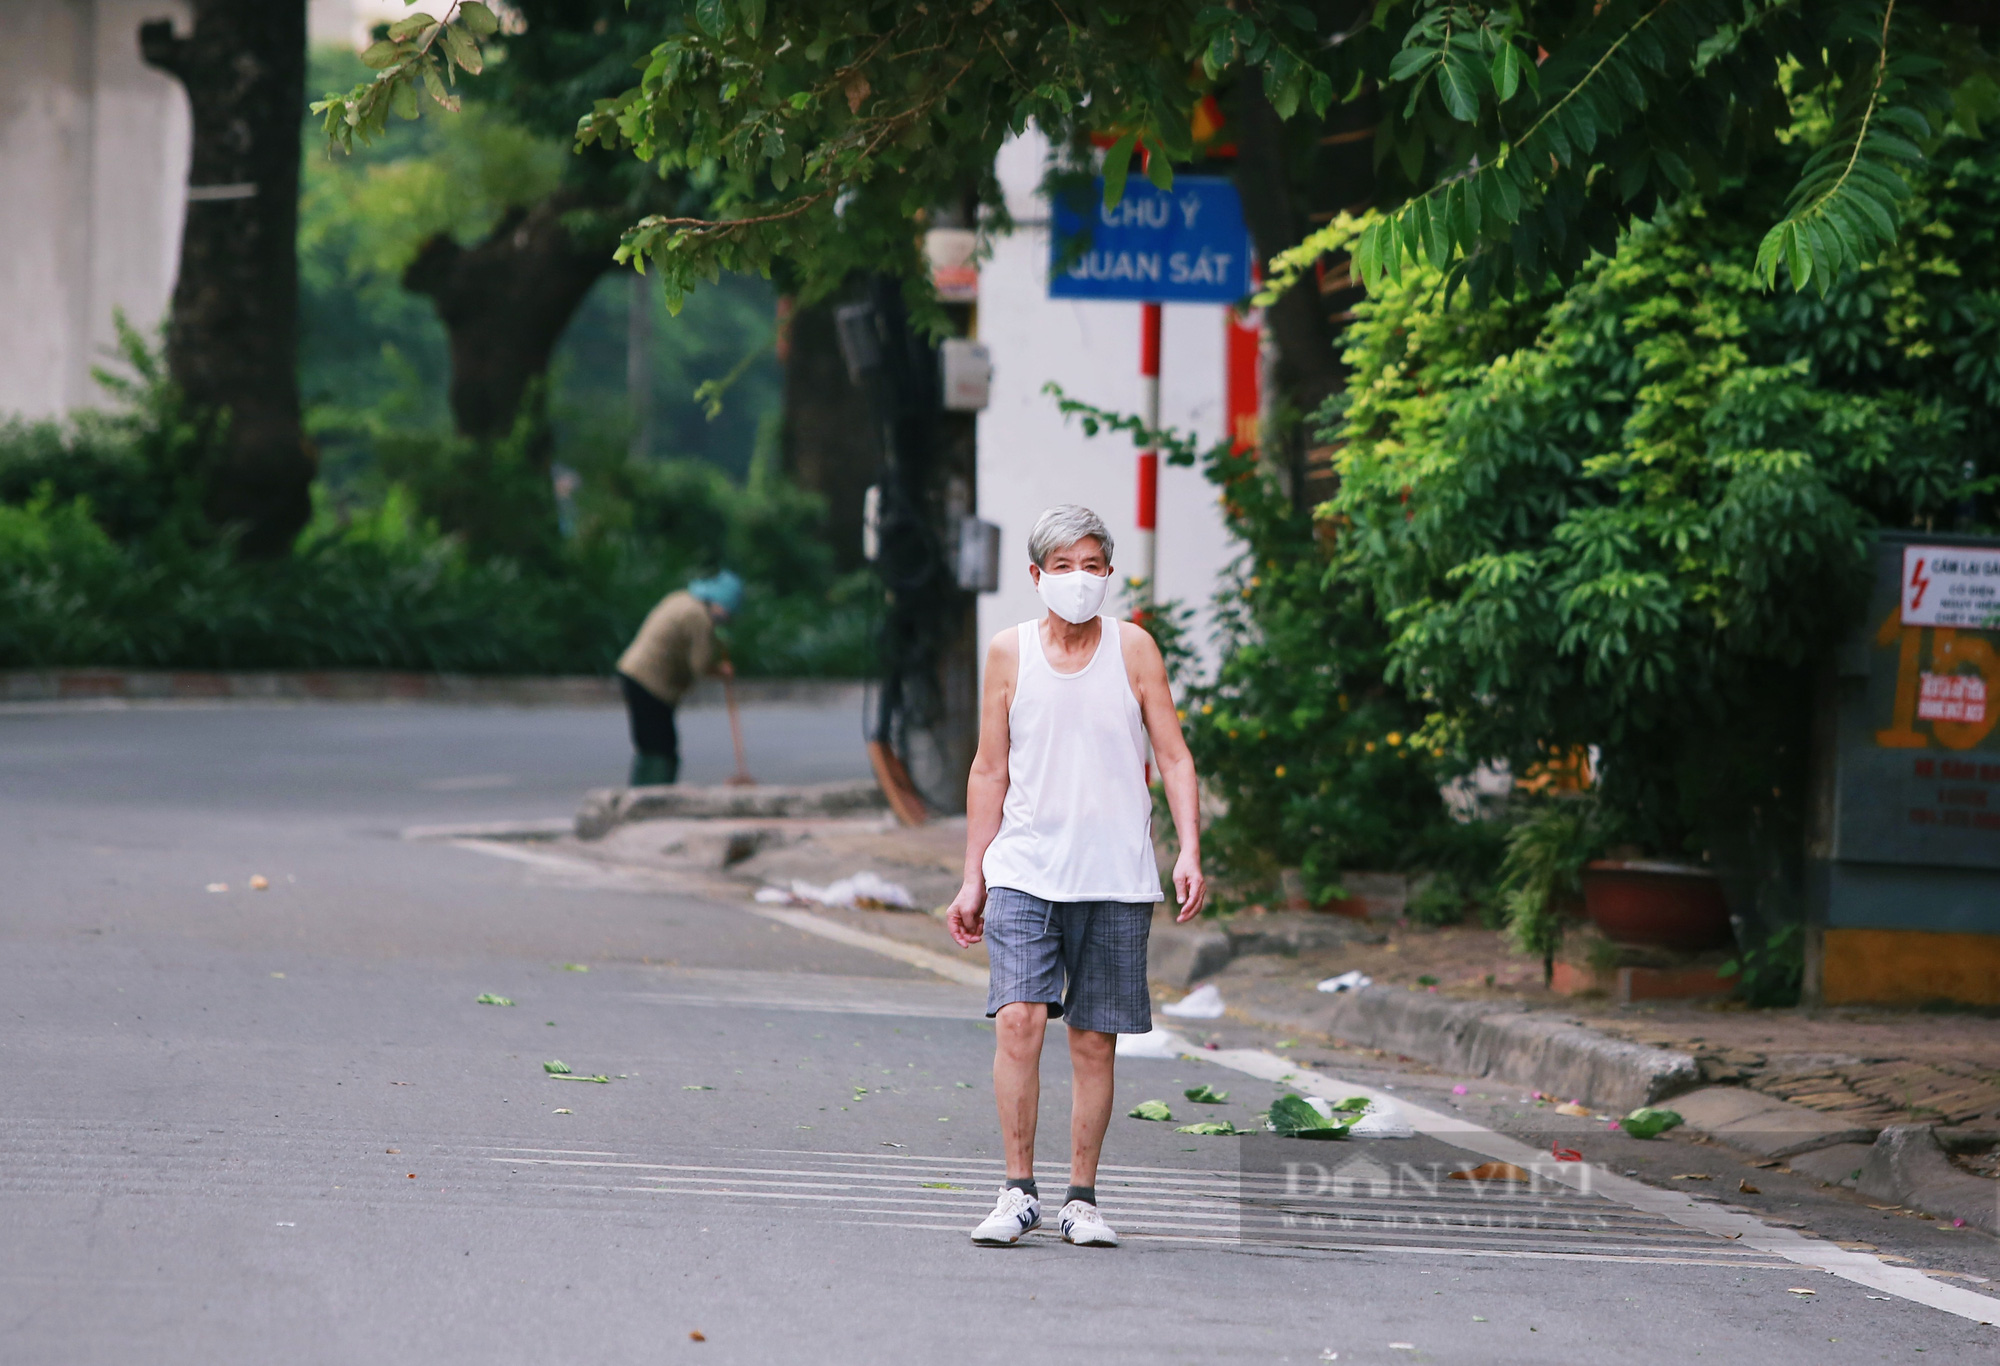 Hà Nội: Nhiều người dân vẫn lơ là chống dịch, thản nhiên luyện tập thể dục ngoài đường phố - Ảnh 9.